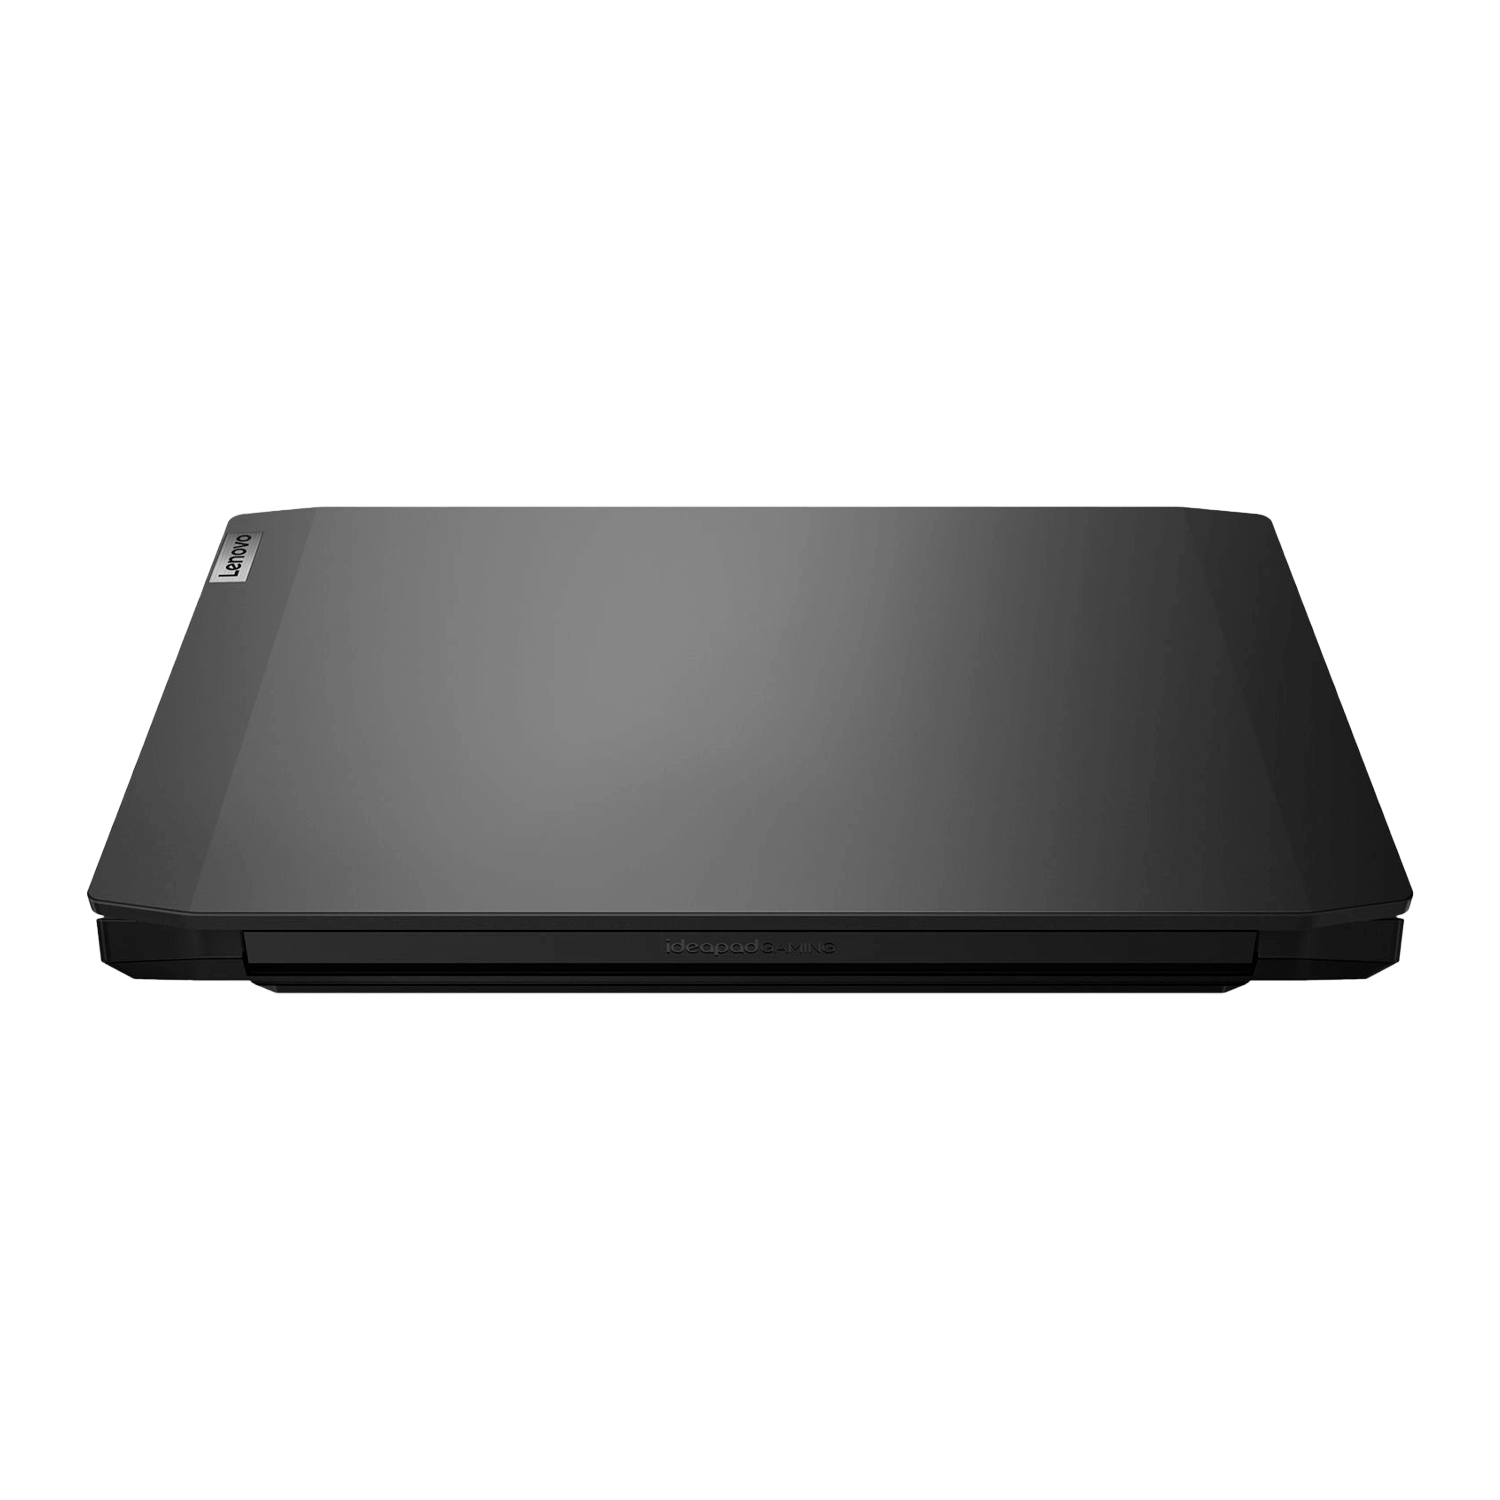 Notebook Lenovo IdeaPad Gaming 3i 81Y4001WUS i5-10300H / 256GB SSD + 1TB / Tela 15.6" / GTX 1650 4GB - Windows 10